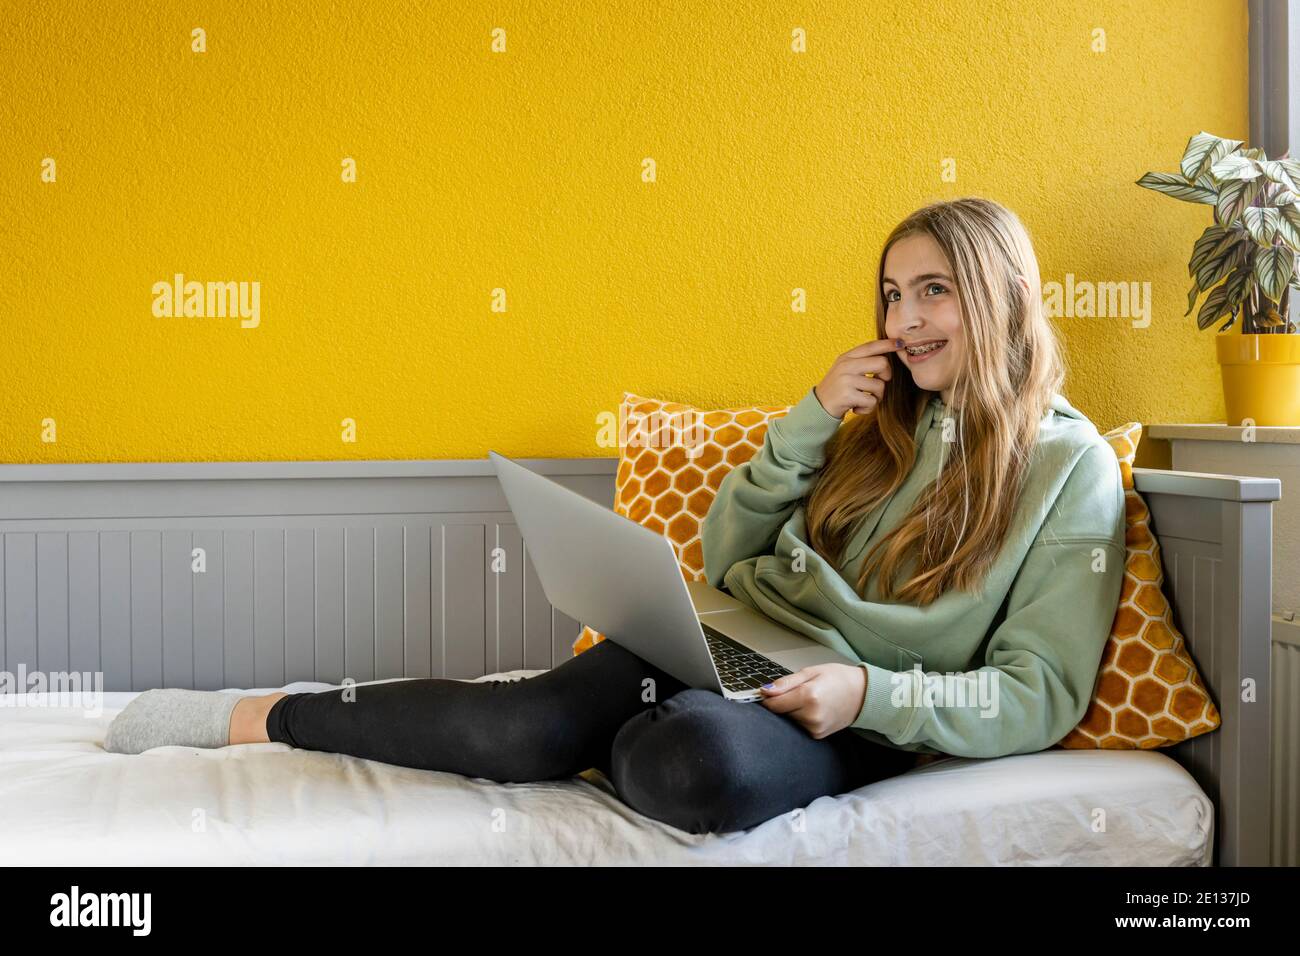 Jeune fille blonde utilisant un ordinateur portable sur son lit avant un mur jaune Banque D'Images